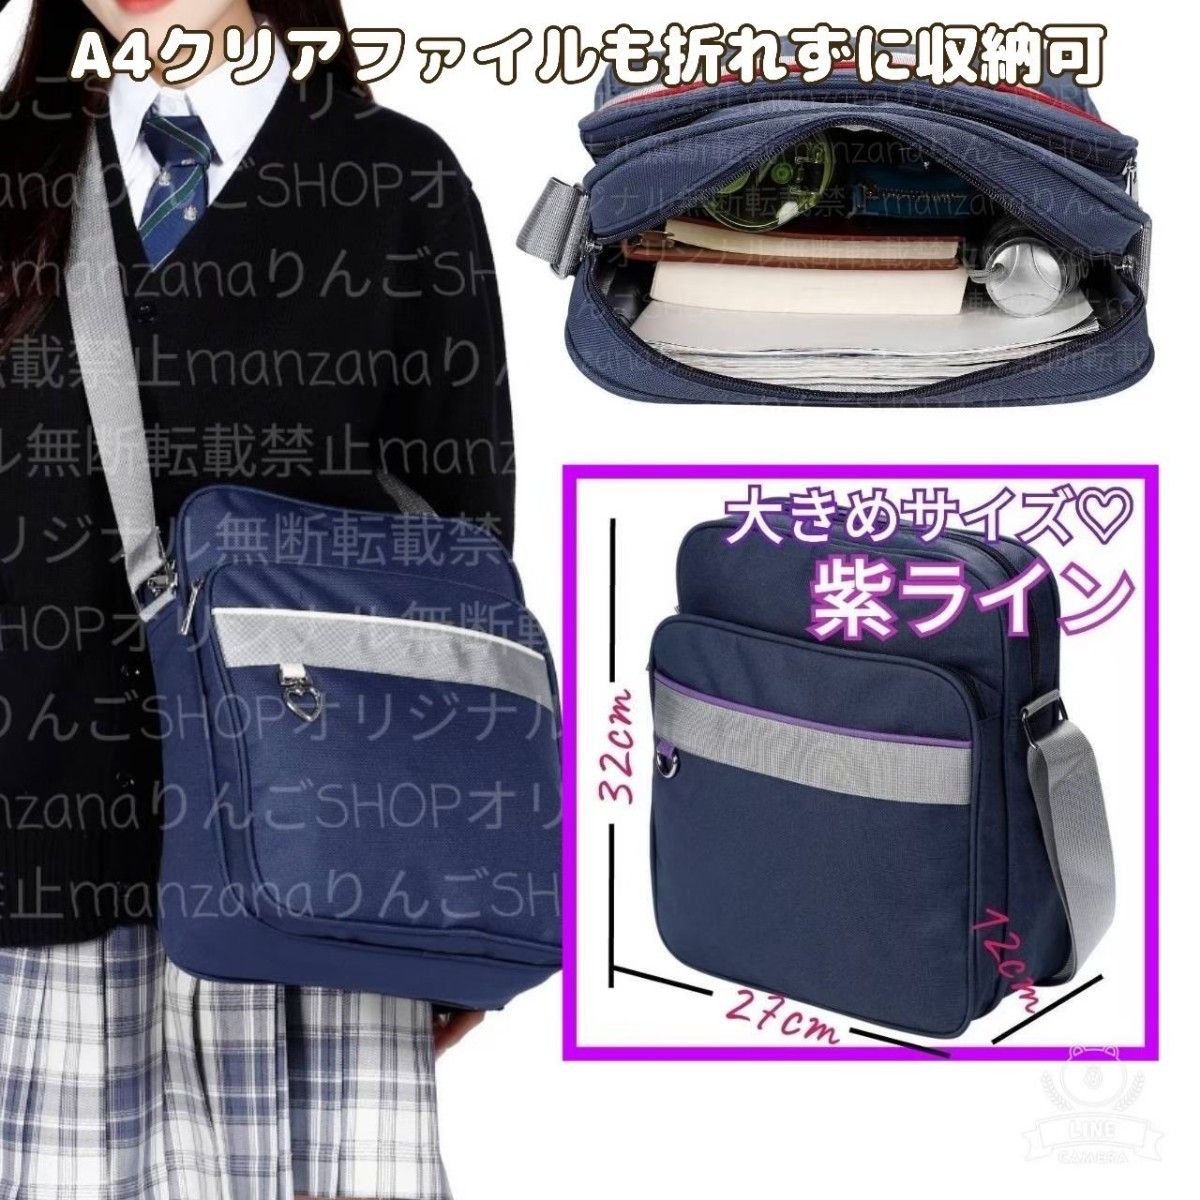 【1個/大/紫】スクールバッグ スクバ  紫ライン 即購入 通学カバン バック バッグ かばん JK 縦型スクバ ショルダーバッグ